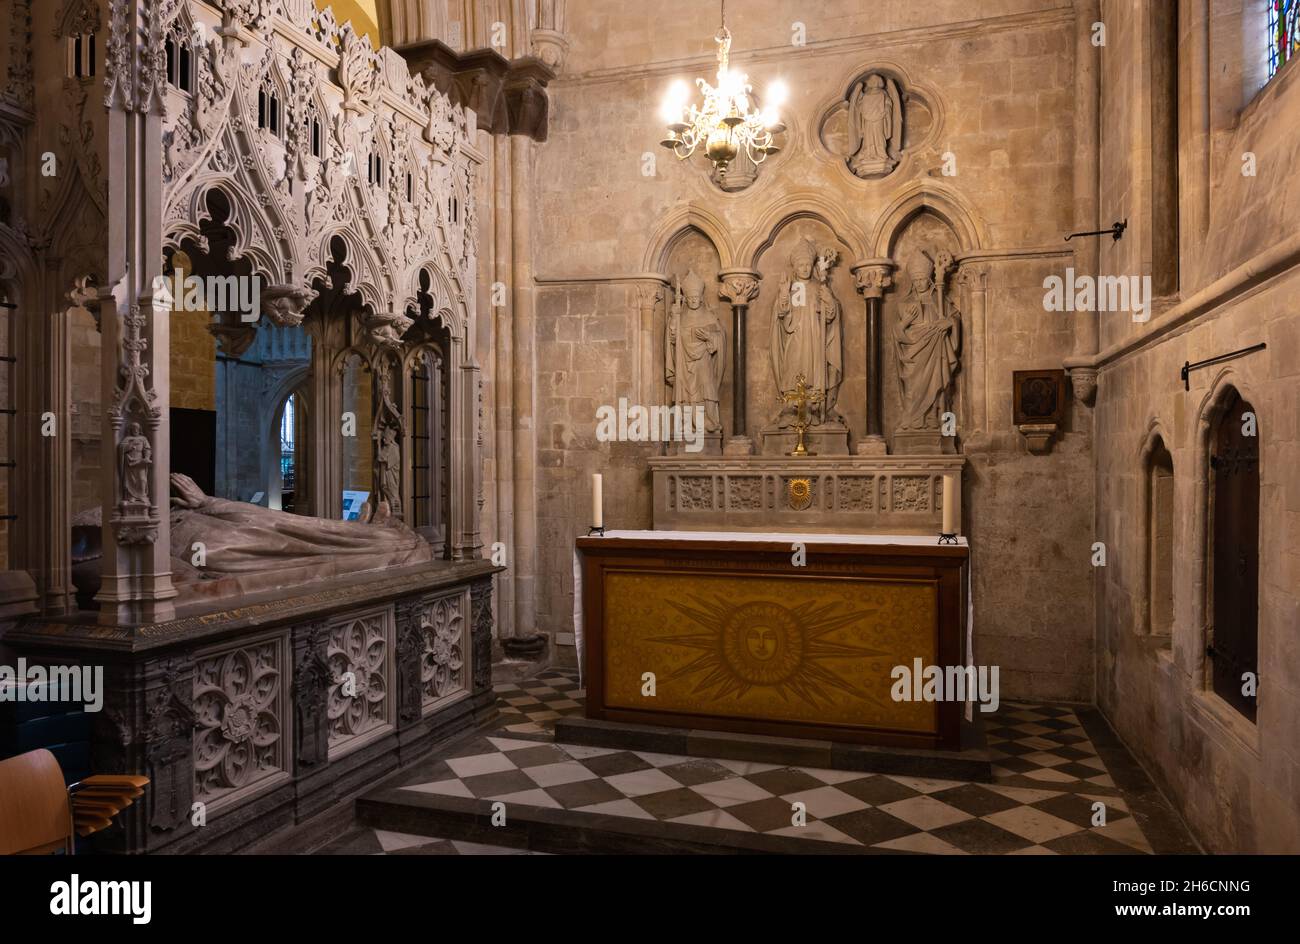 La chapelle Saint-Clément à l'intérieur de la cathédrale de Chichester, au Royaume-Uni.Merci au doyen et au chapitre de la cathédrale de Chichester. Banque D'Images